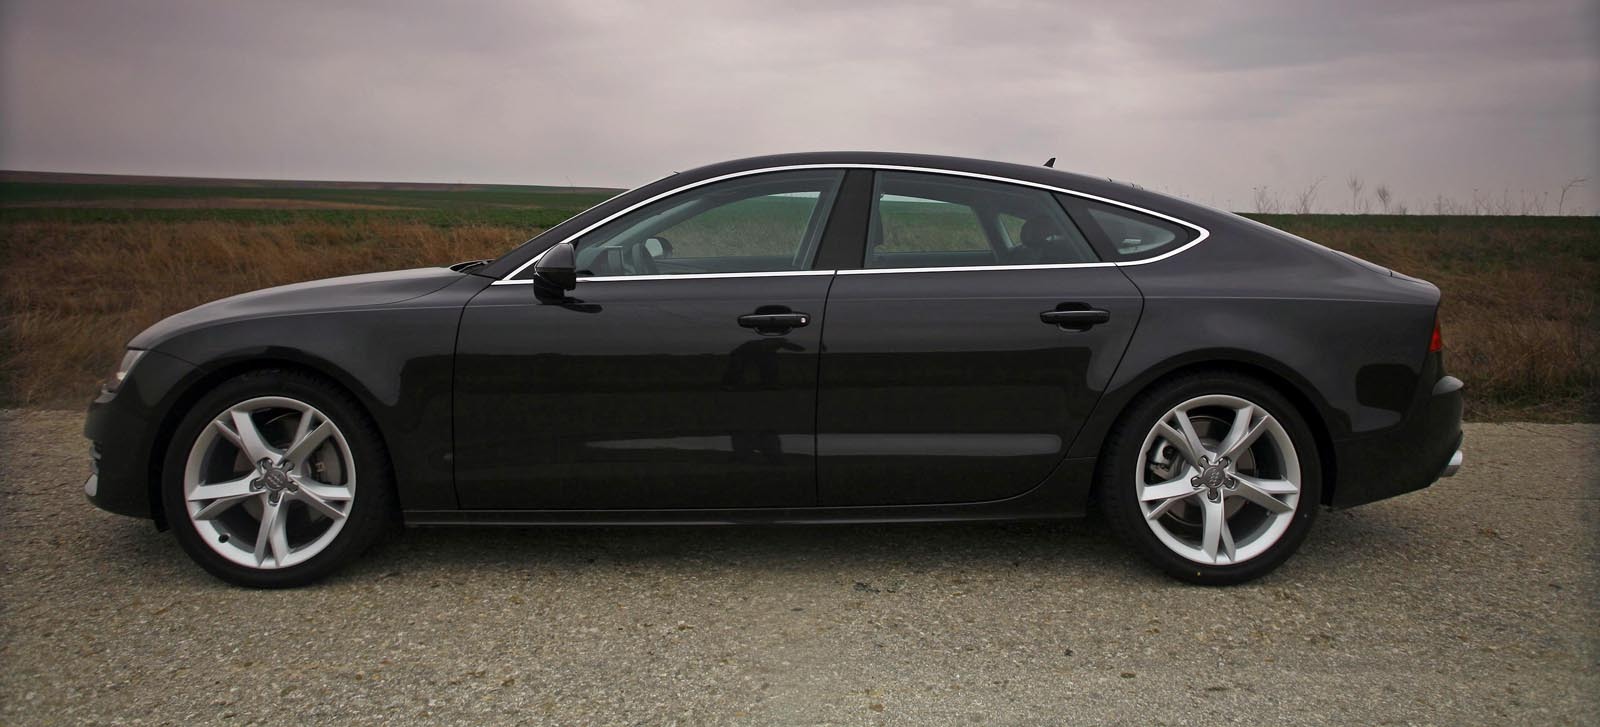 Desi e o adevrata masina lifestyle de lux, Audi A7 poate fi usor confundat cu un A5 Sportback